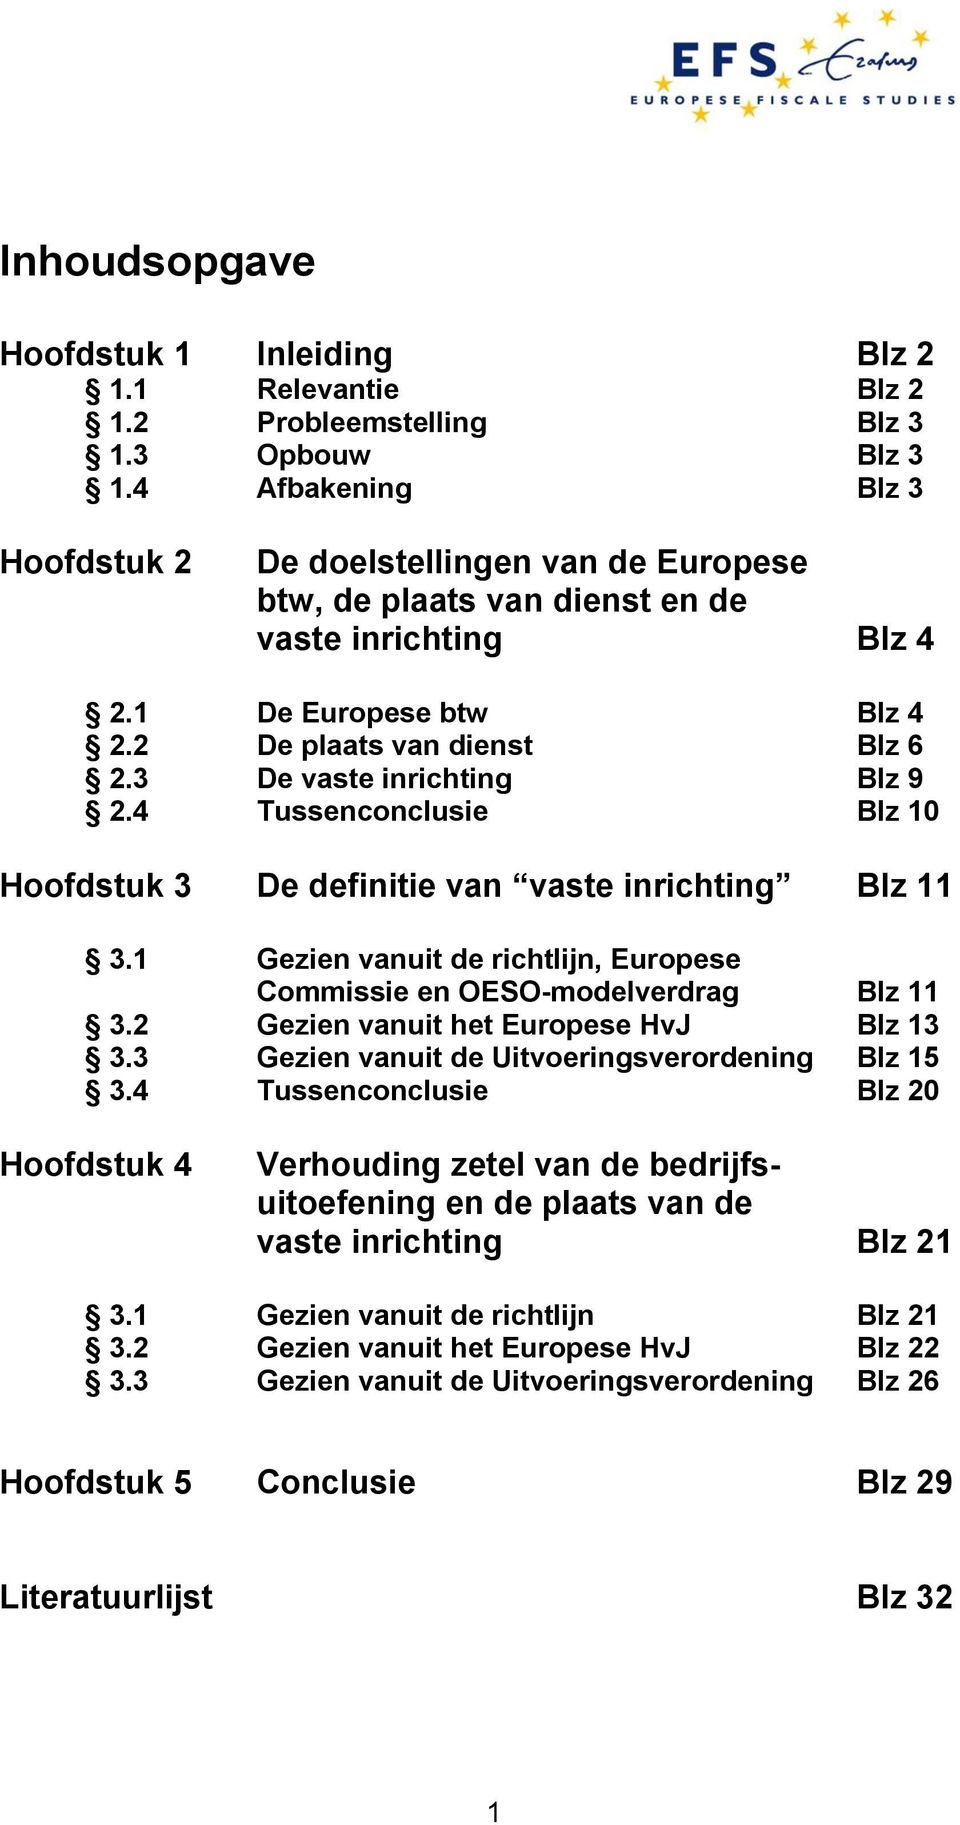 3 De vaste inrichting Blz 9 2.4 Tussenconclusie Blz 10 Hoofdstuk 3 De definitie van vaste inrichting Blz 11 3.1 Gezien vanuit de richtlijn, Europese Commissie en OESO-modelverdrag Blz 11 3.